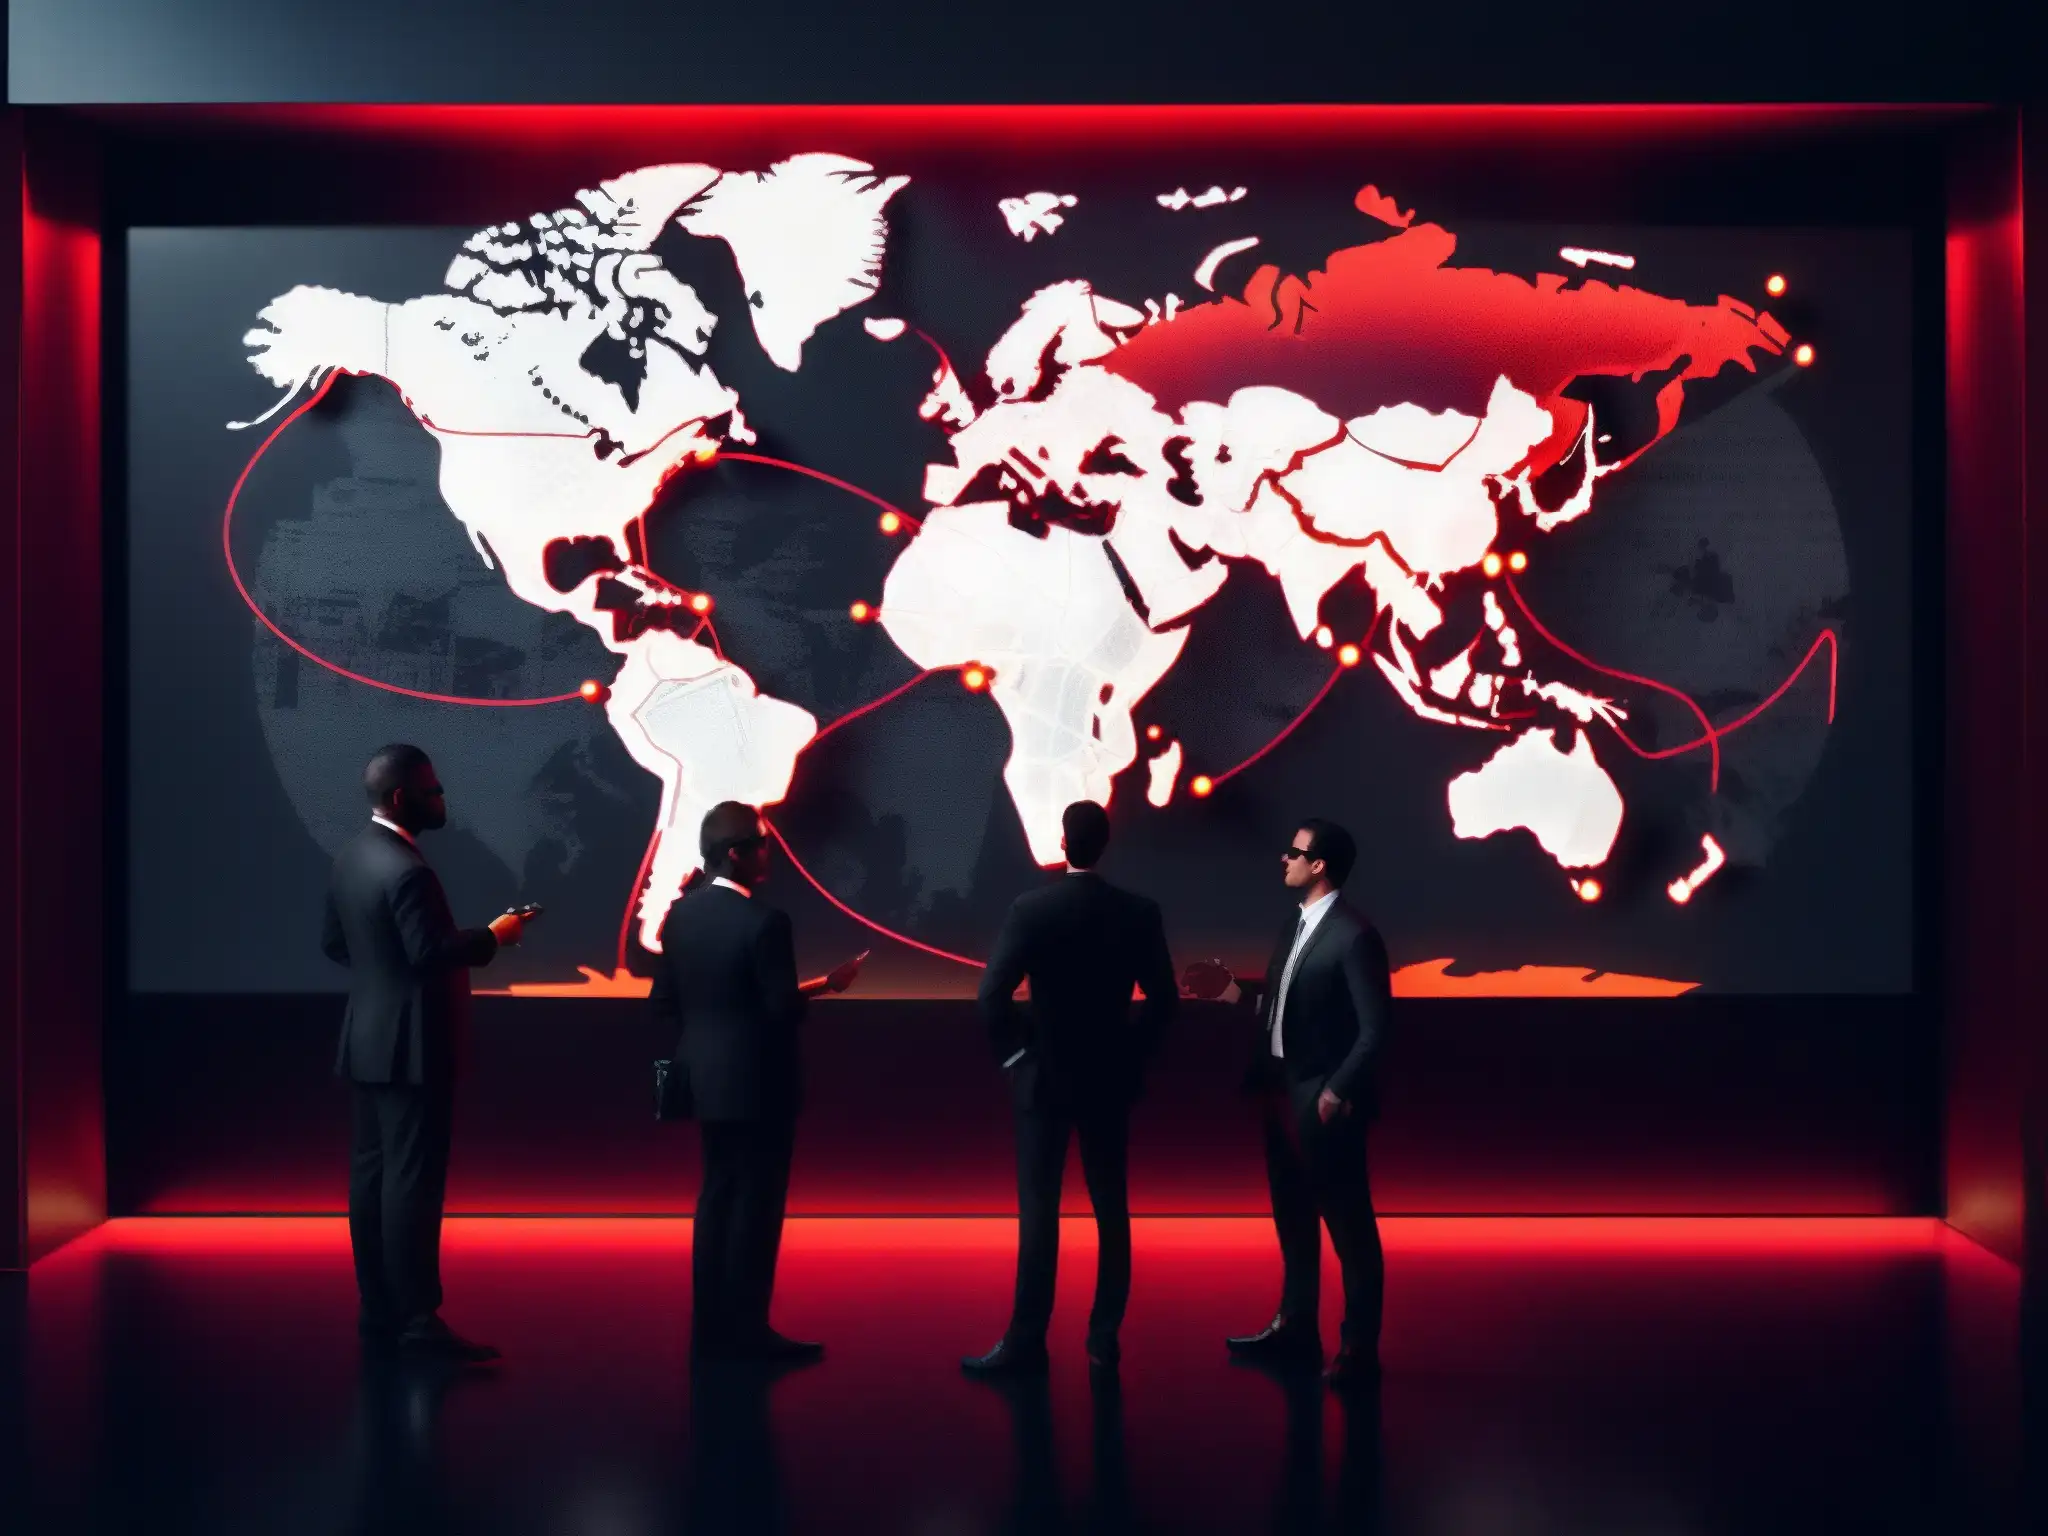 Reunión secreta de figuras en traje oscuro ante mapa mundial con hilos rojos y alfileres, simbolizando red de control global operada por sociedades secretas